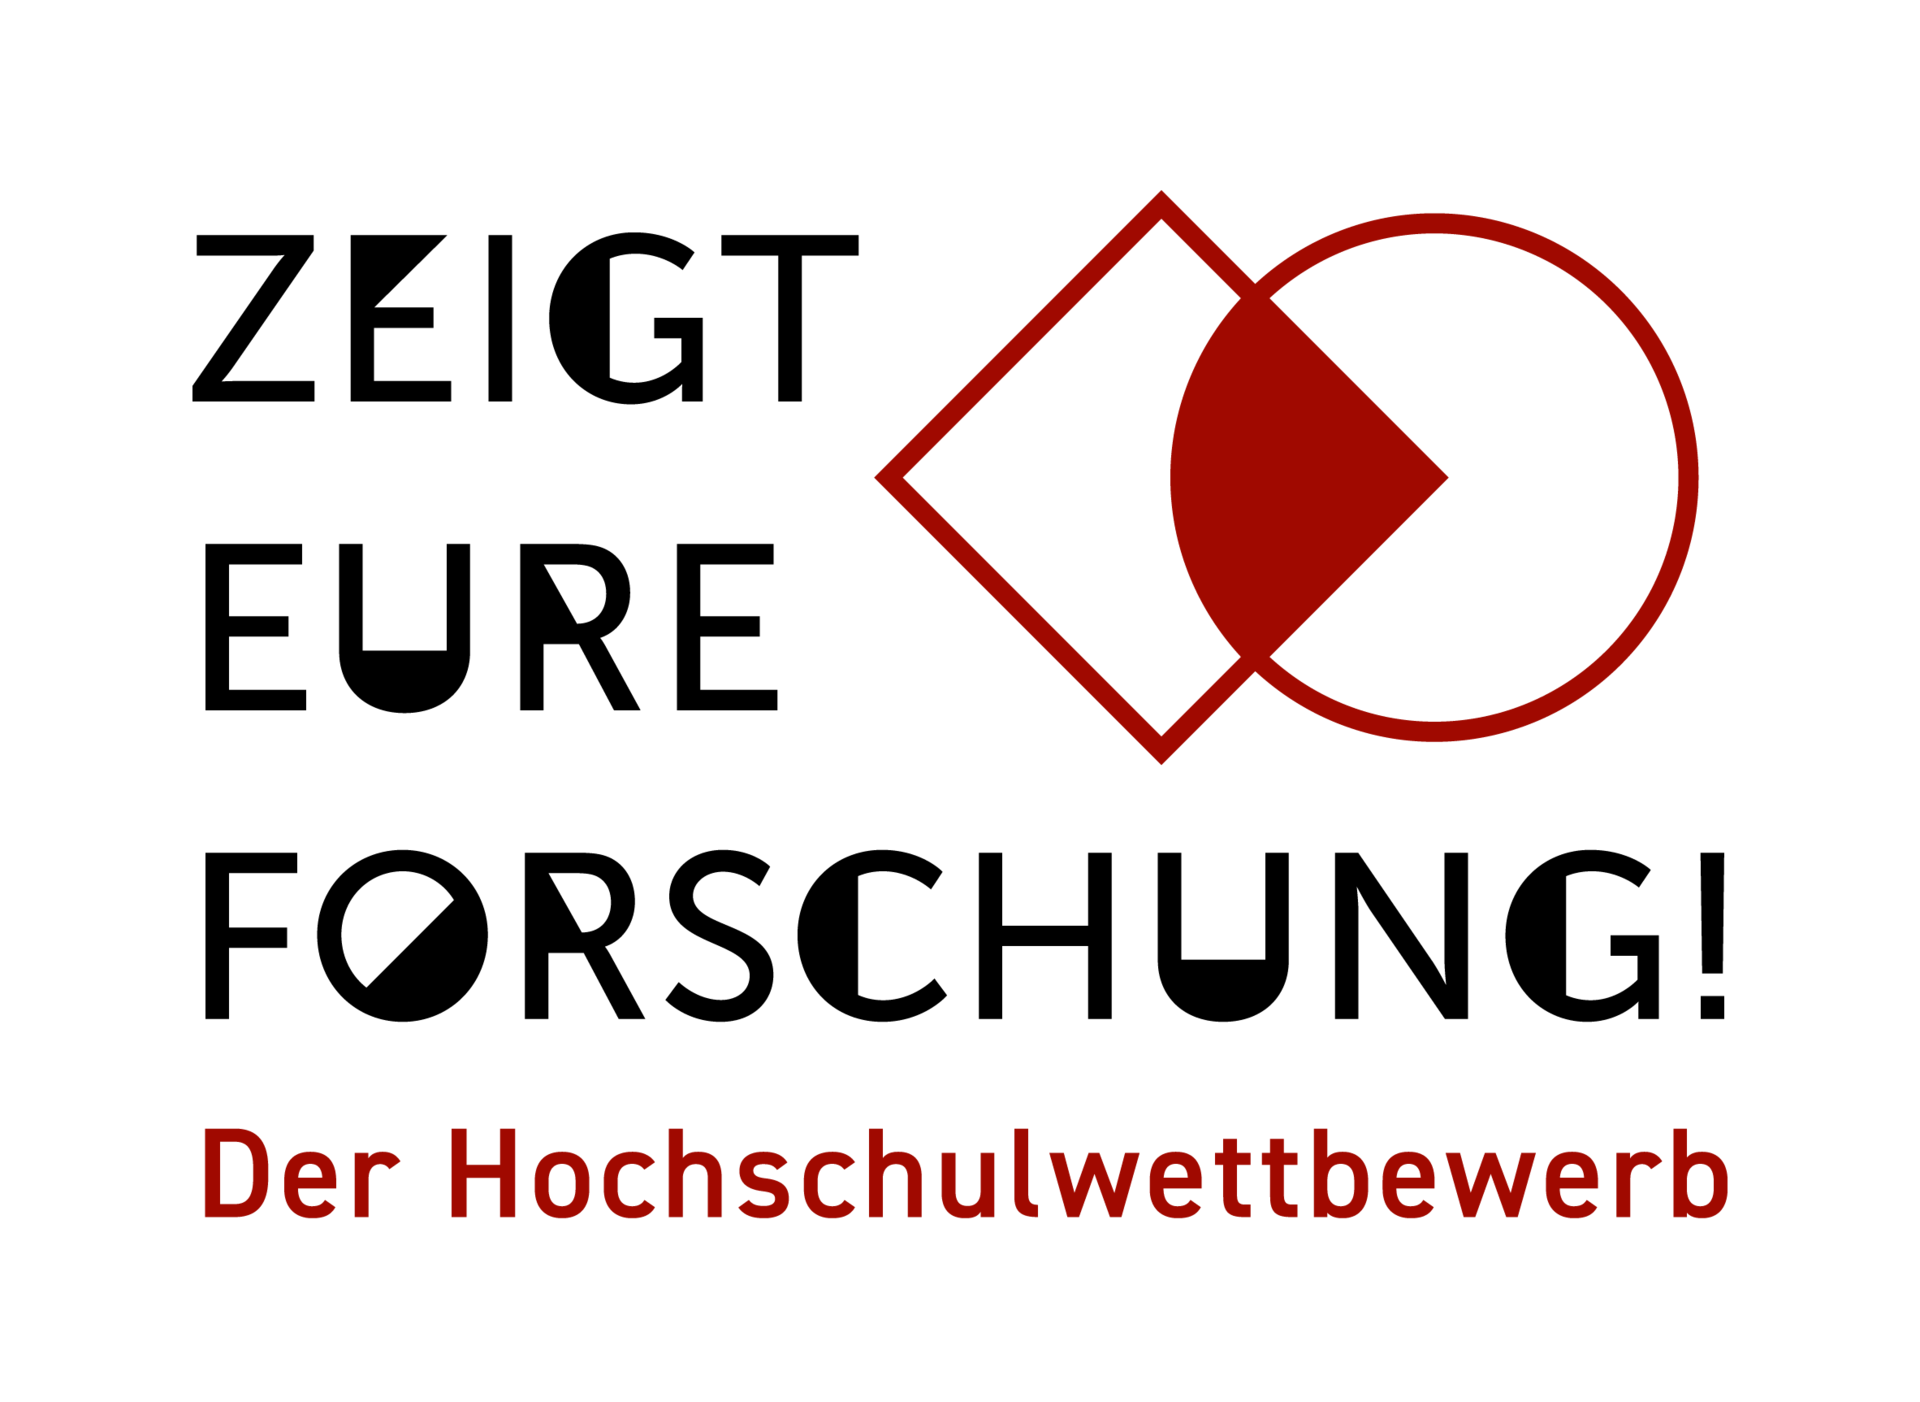 Rotes Logo mit Schwarzer Schrift "Zeigt eure Forschung - Der Hochschulwettbewerb" 